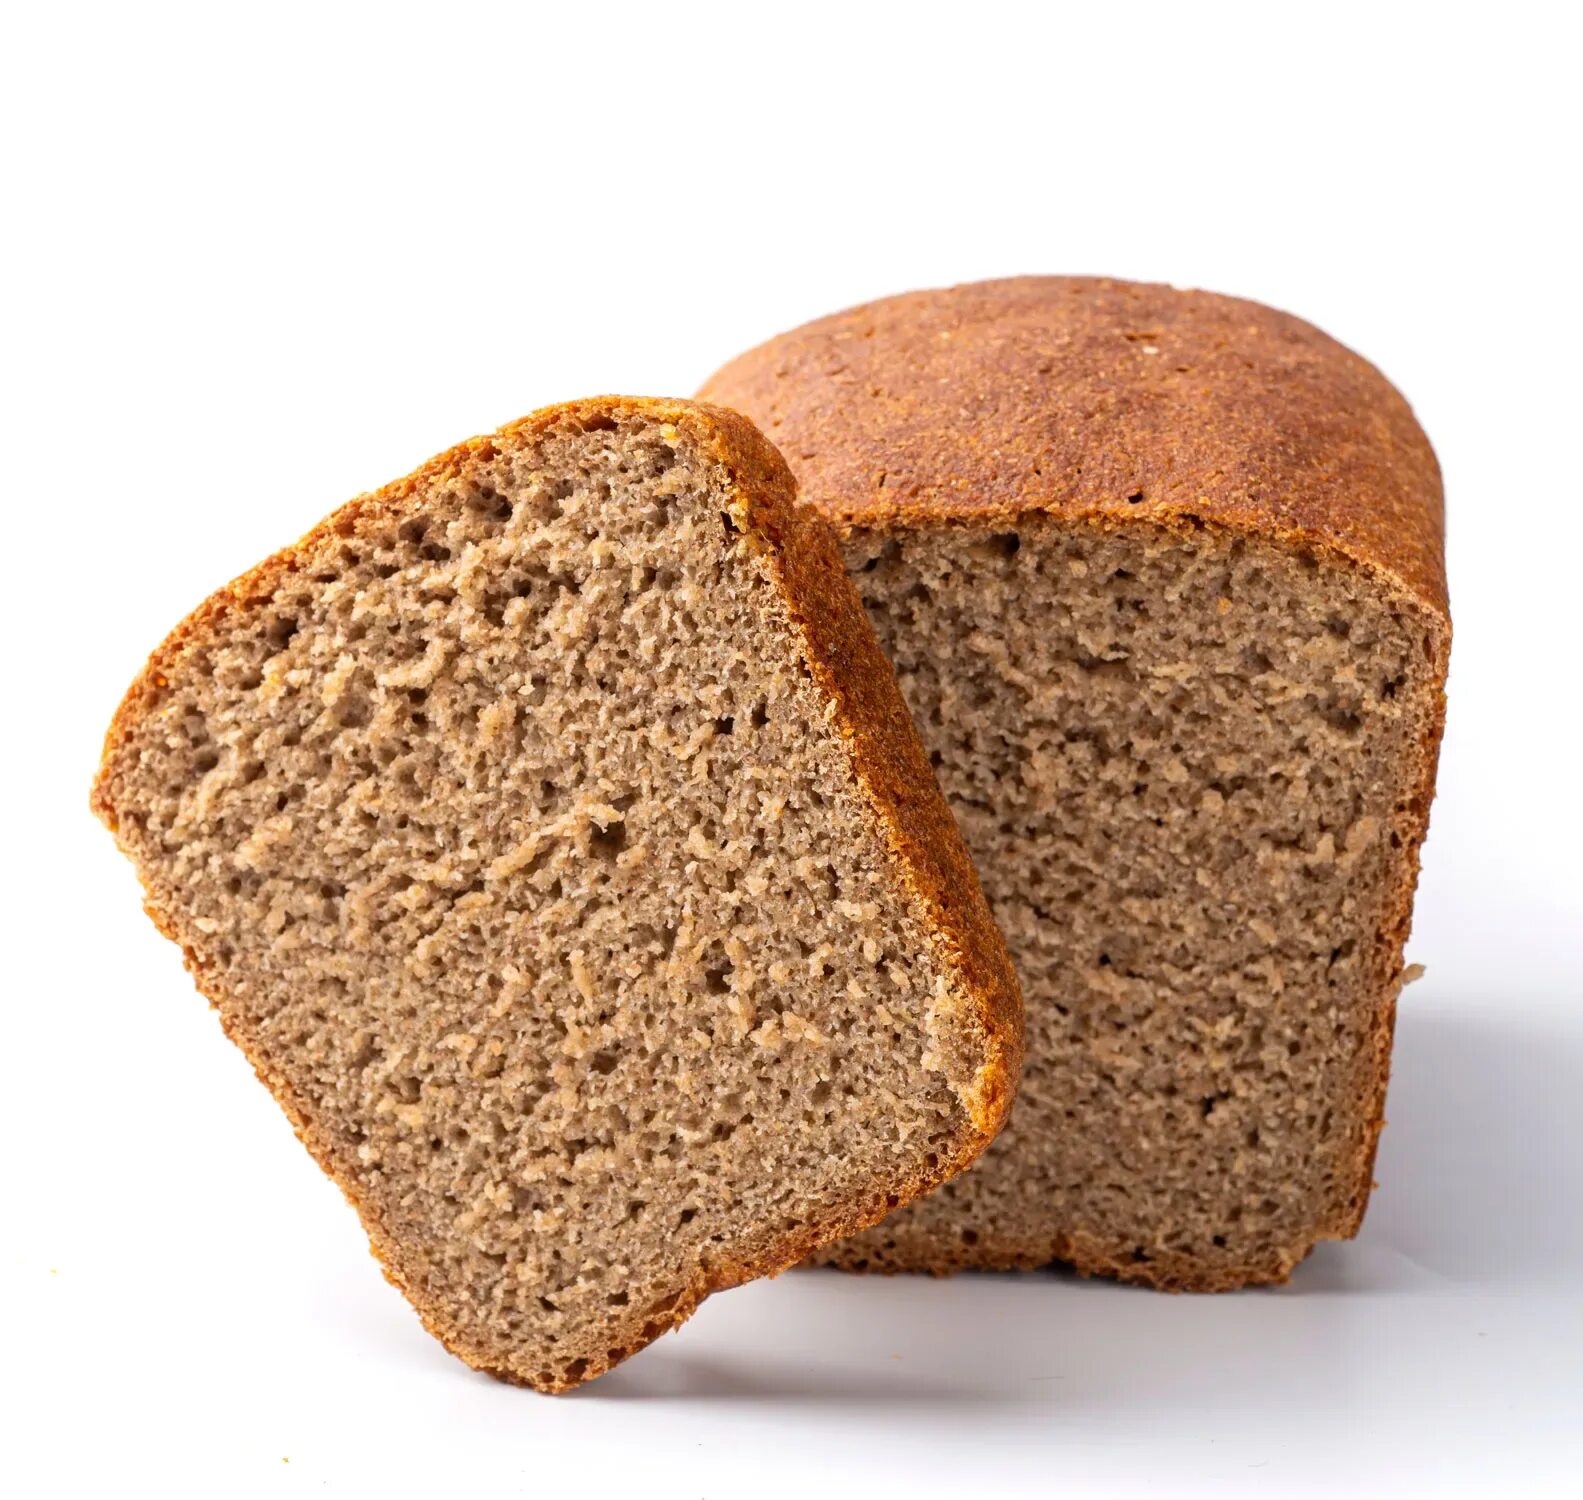 Ржано-пшеничный хлеб с отрубями. Черный хлеб. Черный ржаной хлеб. Хлеб Житный. Ржаной хлеб в магазине